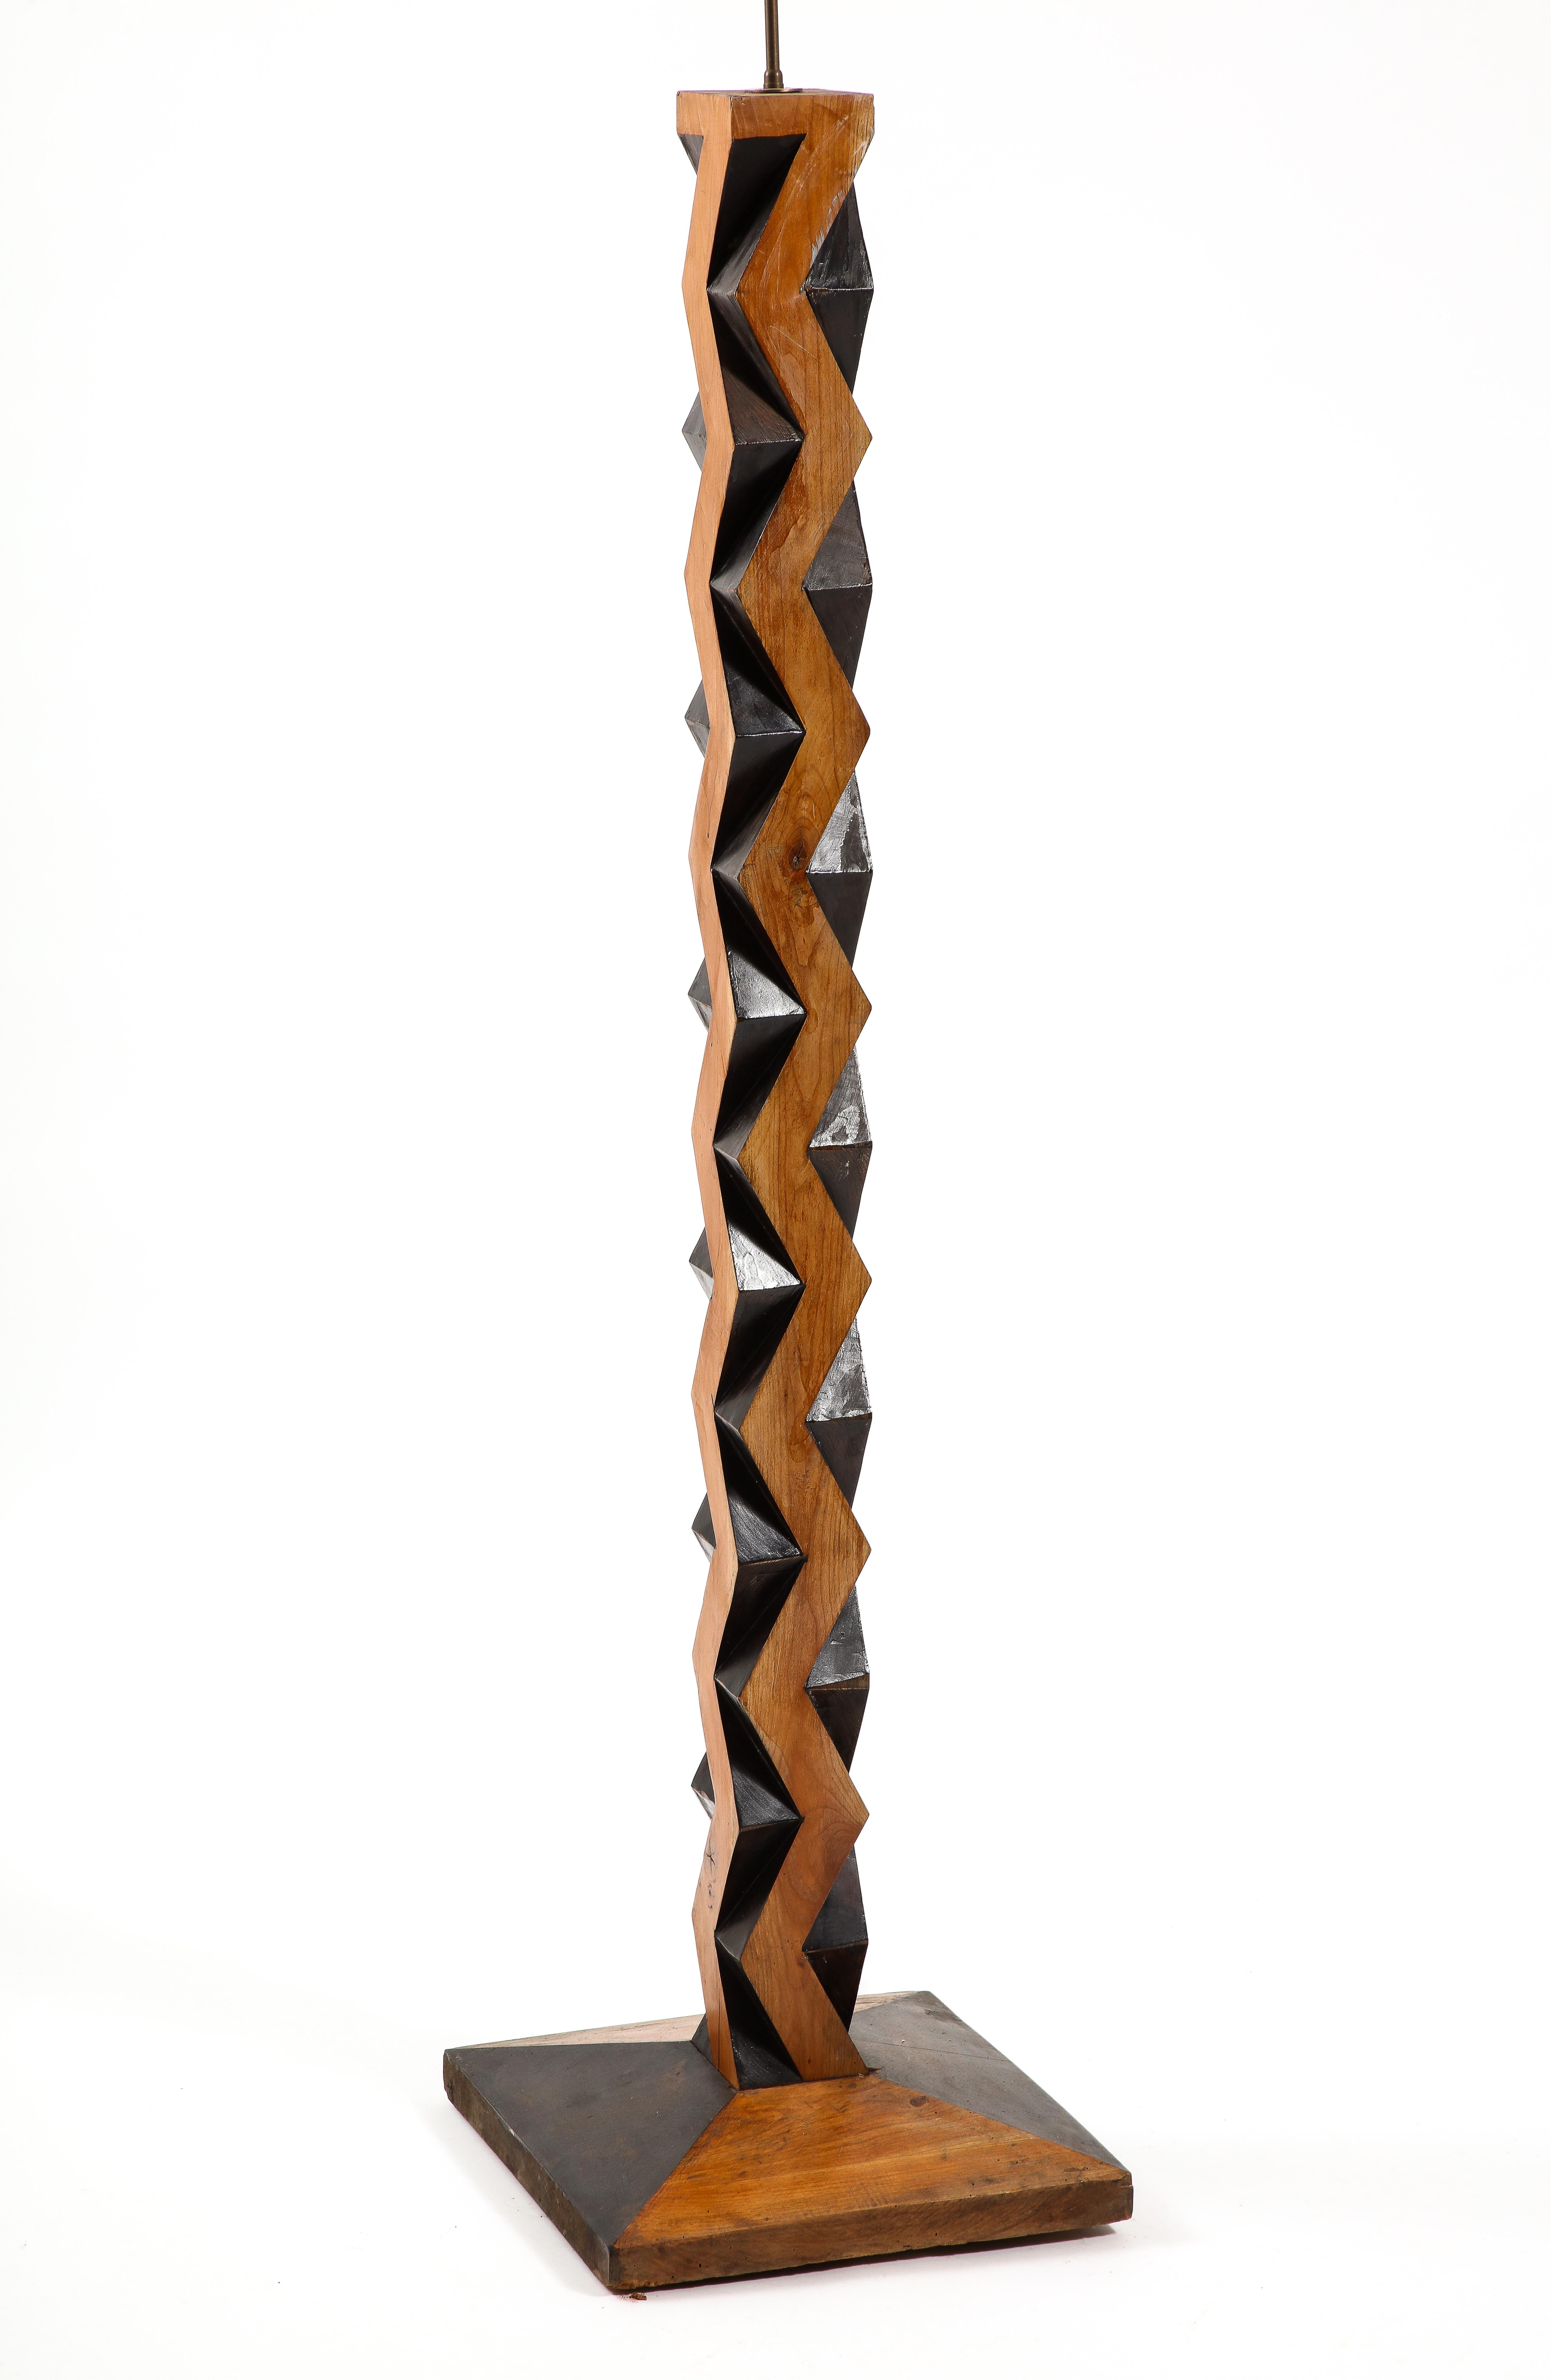 Fantastische geometrische Stehlampe aus massivem Nussbaumholz mit zweifarbiger Oberfläche, die in einem sich wiederholenden Muster geschnitzt ist, ist sie ein Statement.